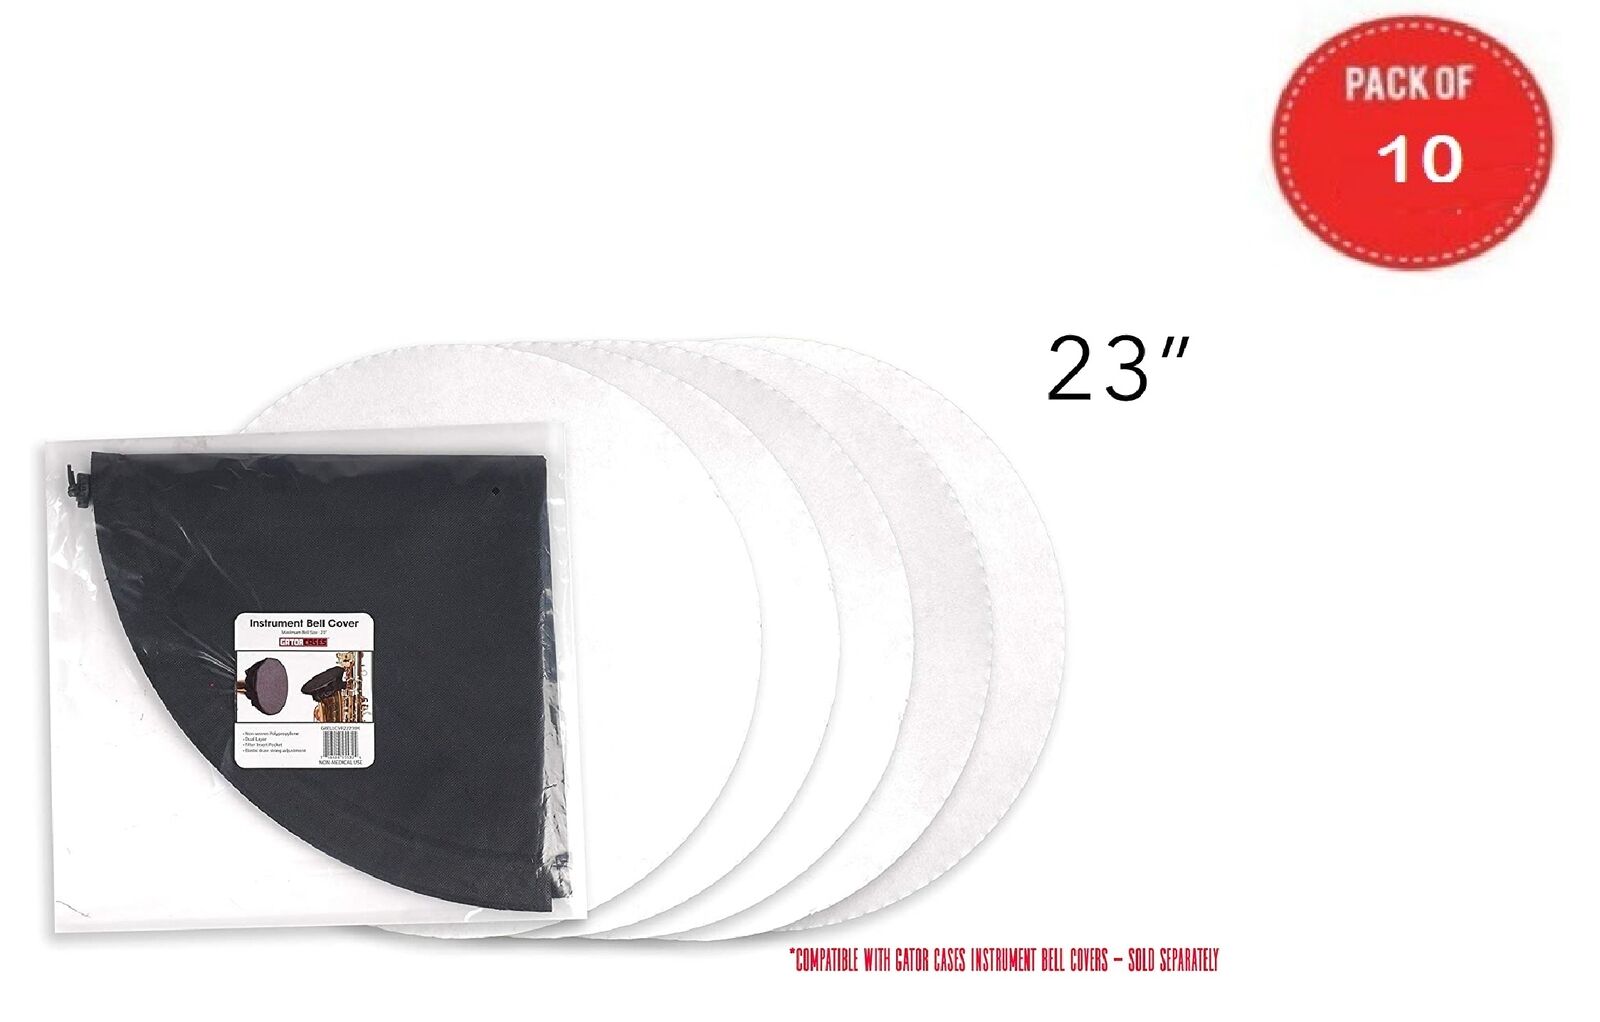 10 Pack Of 23 Inch Merv 13 Filters - Gbellcvr2223bk